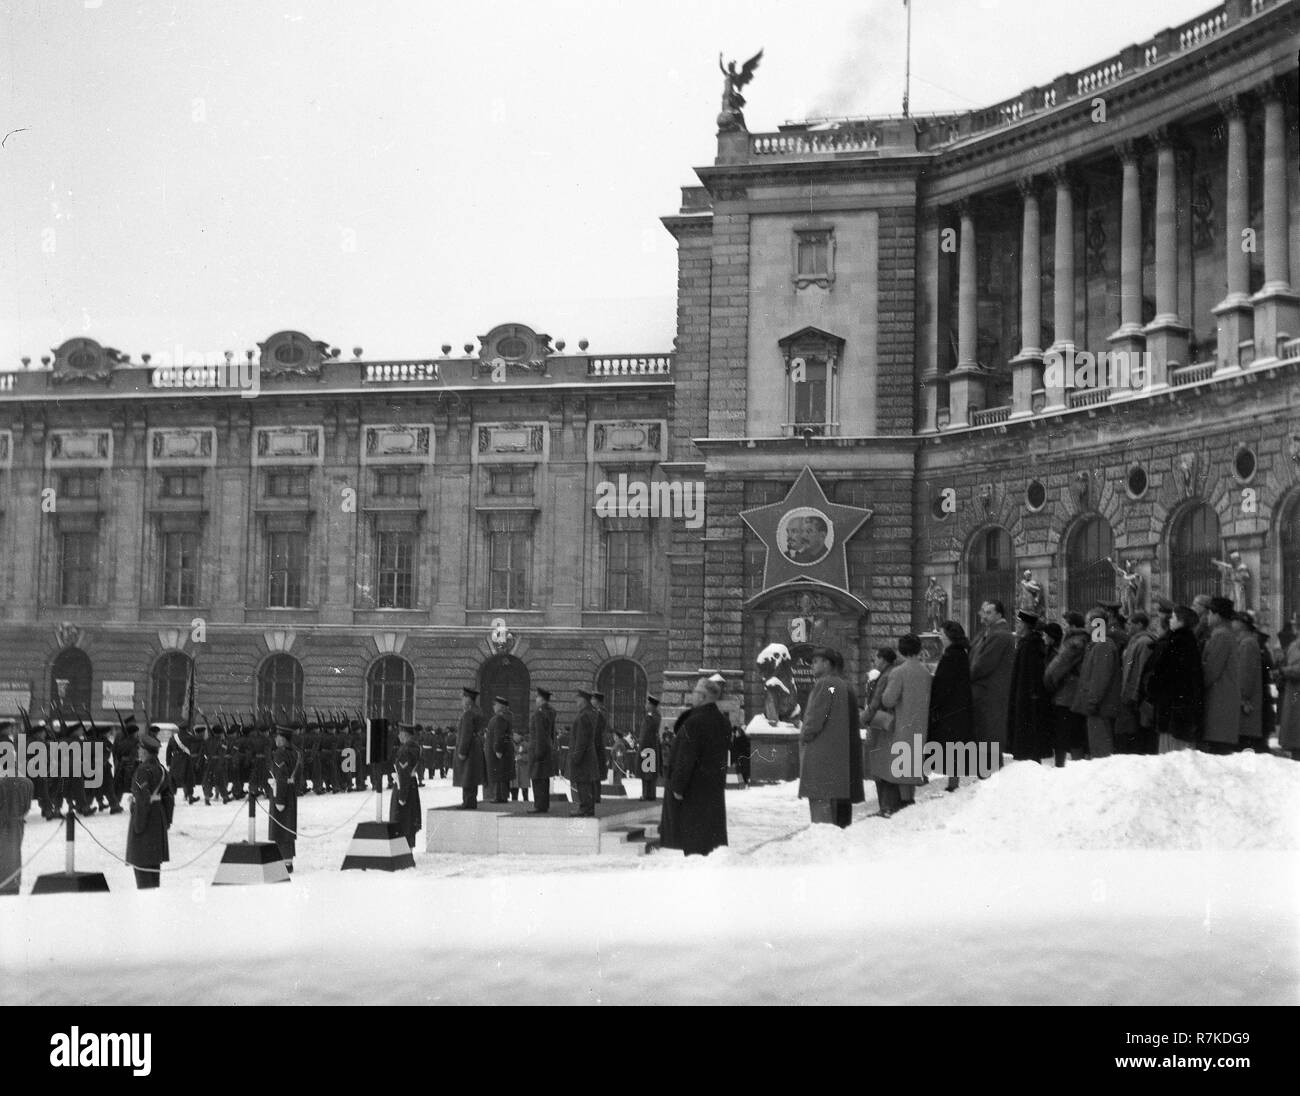 Il dopoguerra Vienna durante l'occupazione alleata changhing mensile della guardia a Vienna Austria presso il Palazzo Imperiale Hofburg di Vienna Wien nel 1947 Foto Stock